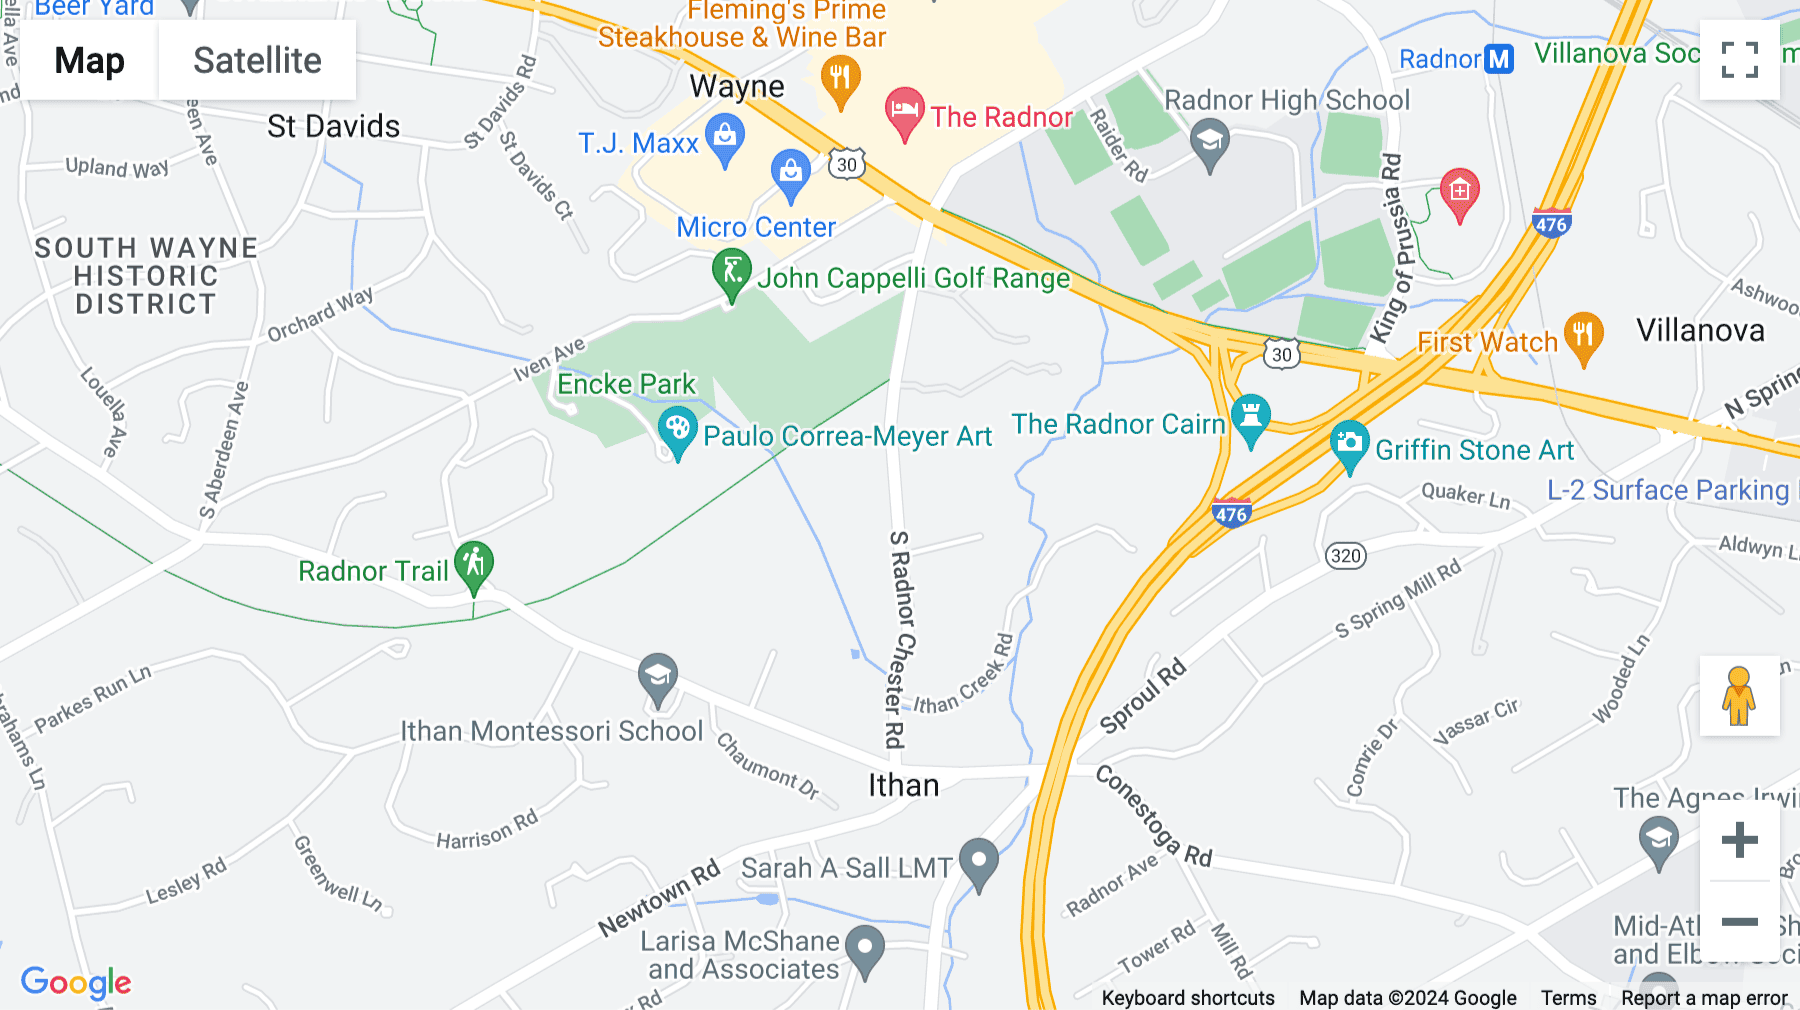 Click for interative map of 150 Radnor Chester road, Suite F 200, Radnor Financial Building, Radnor